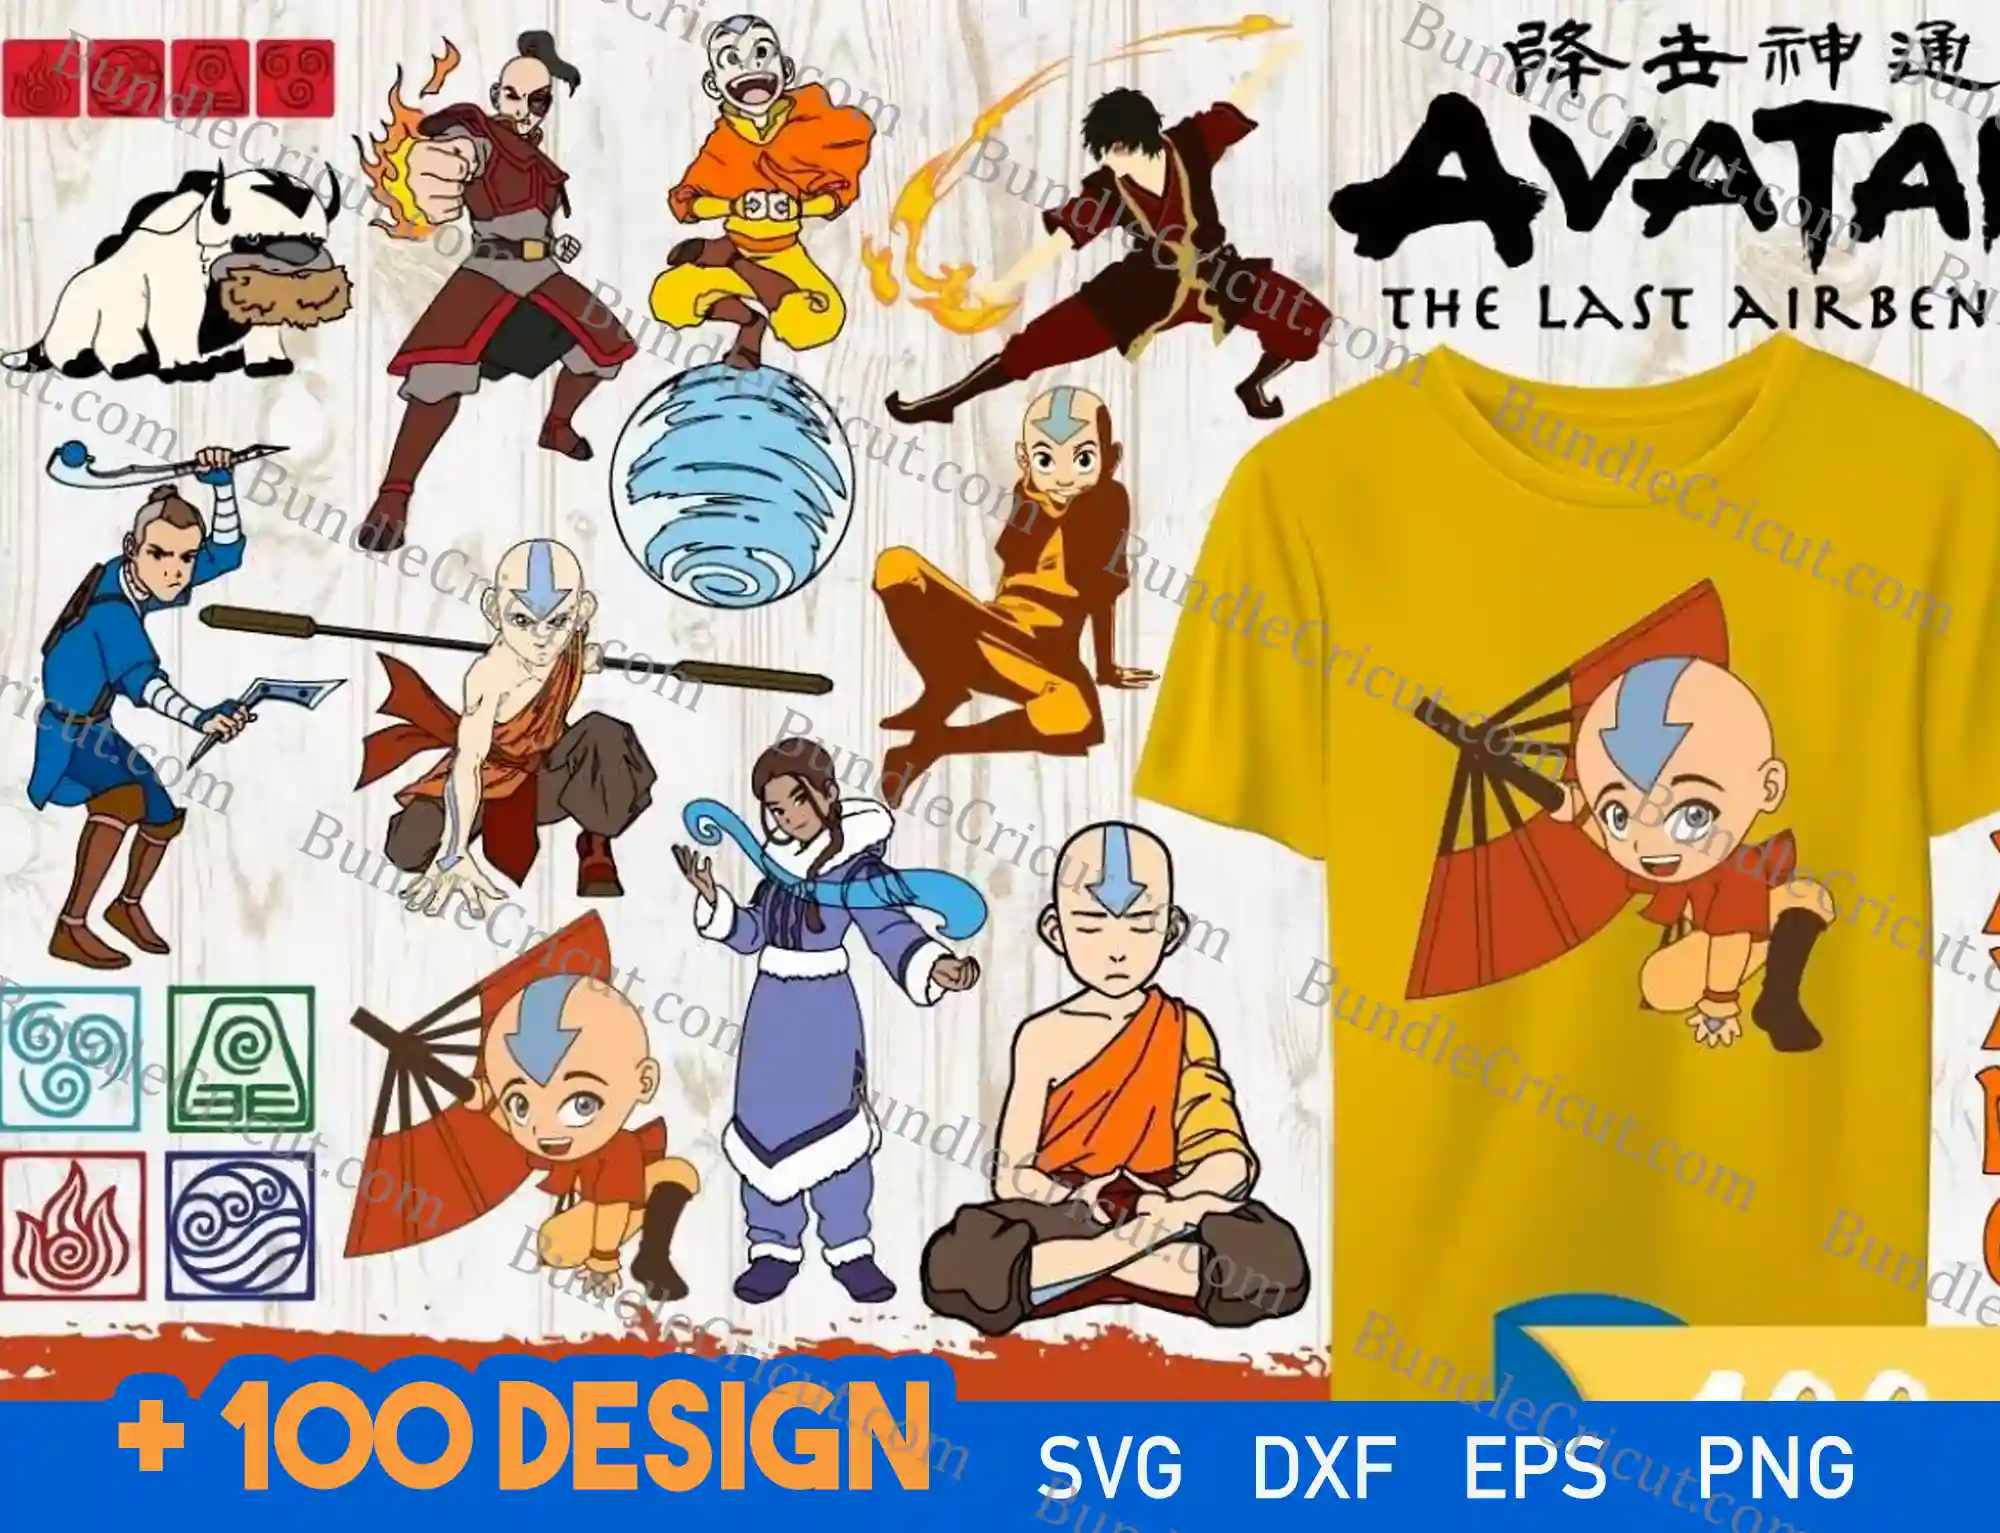 Is Avatar (ATLA) an anime?